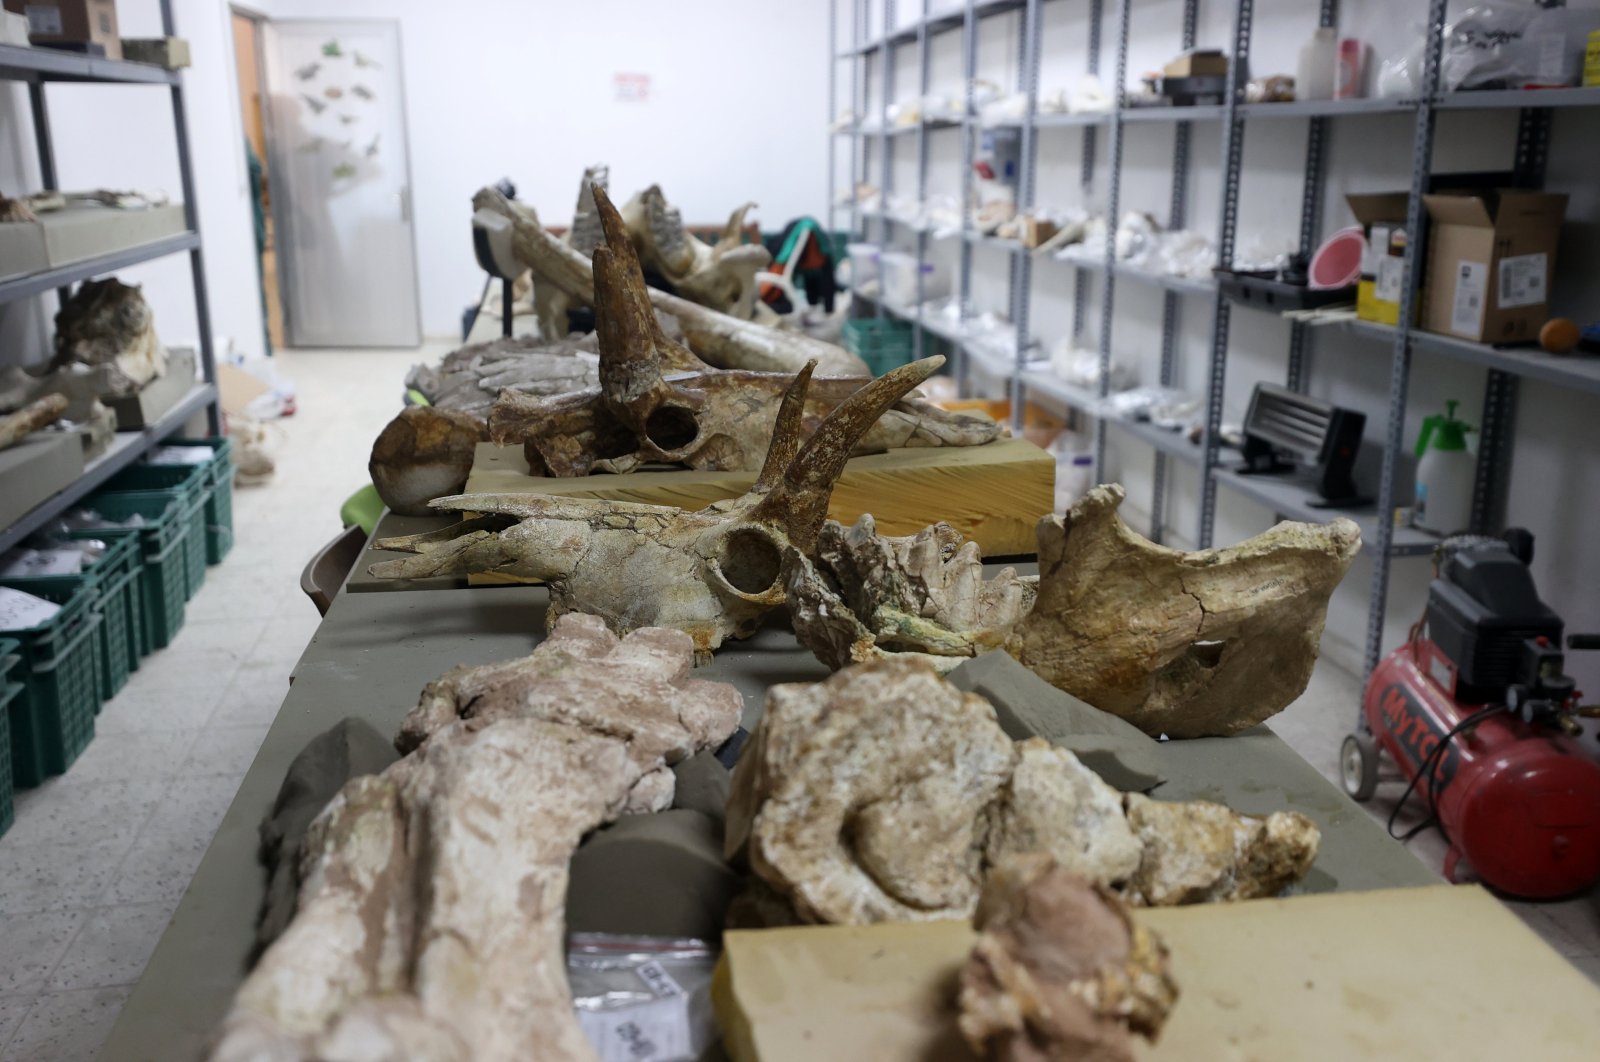 Giraffe fossils found during excavations in Türkiye’s Kayseri